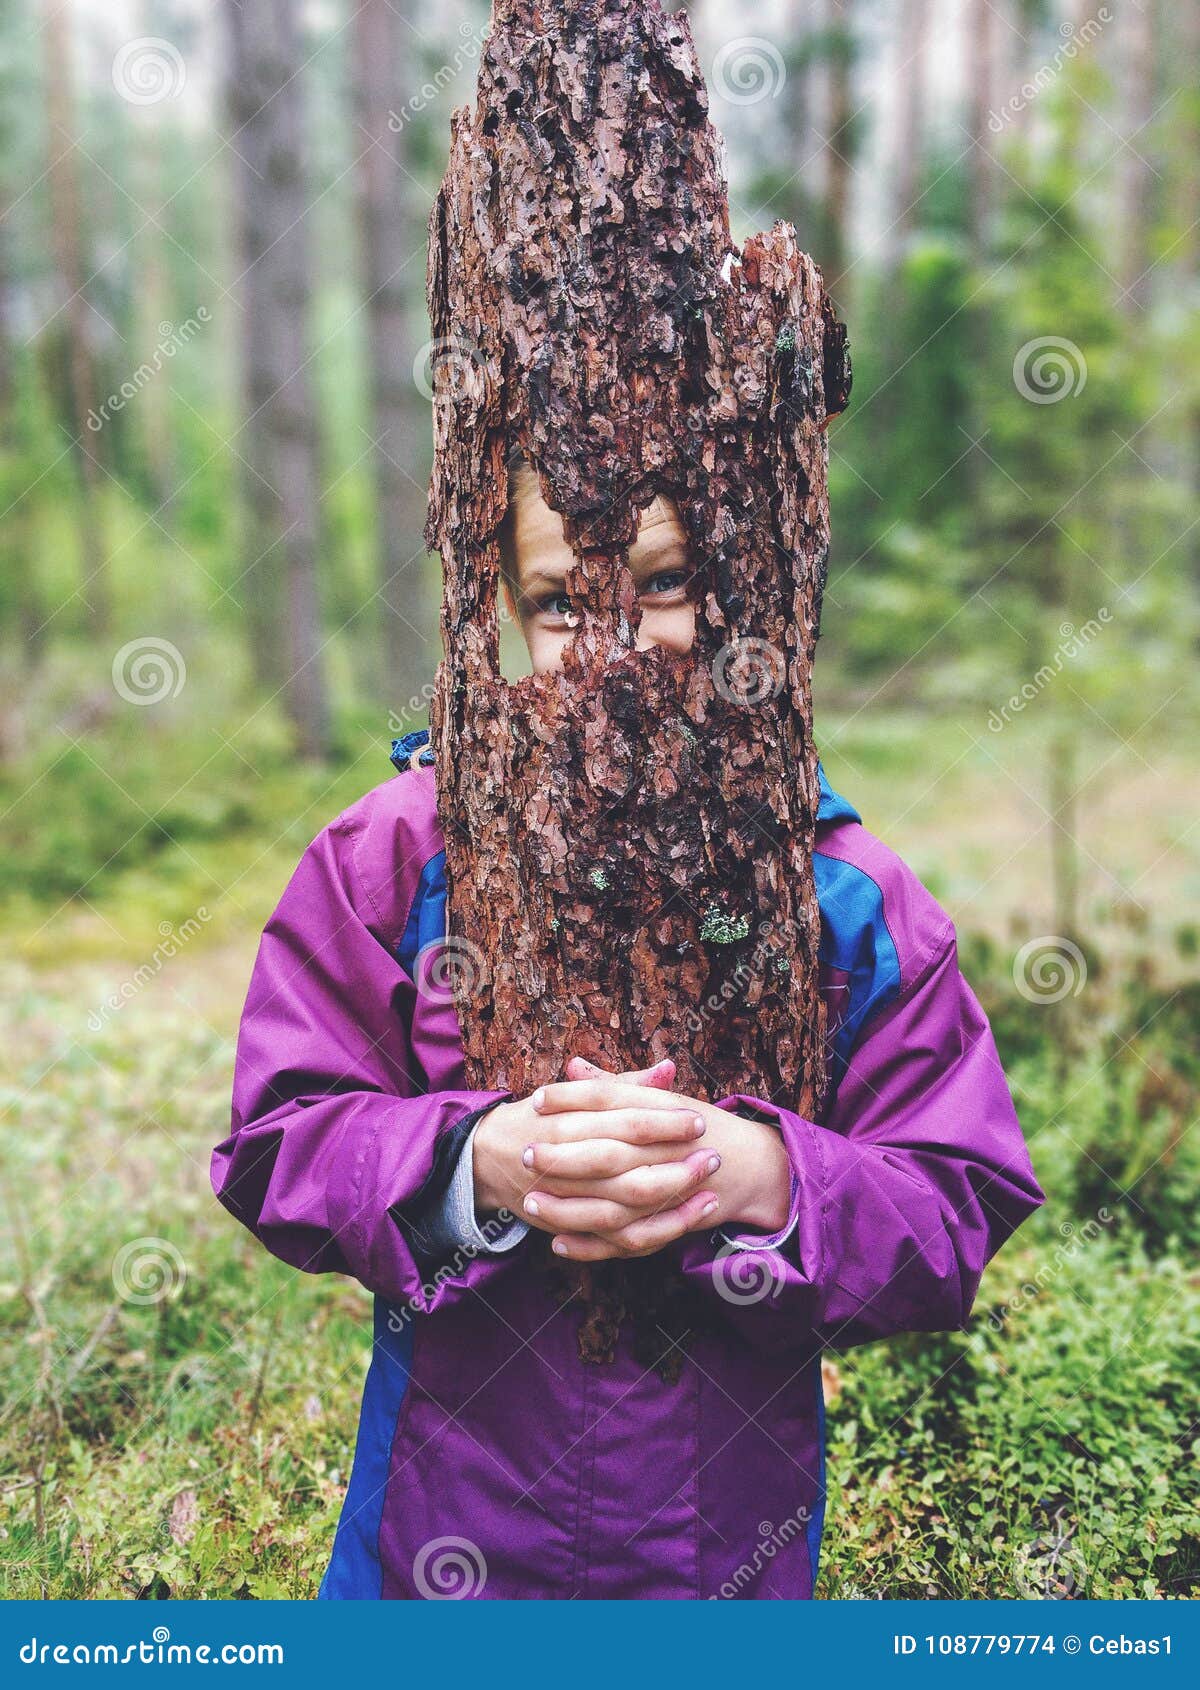 Młoda figlarnie dziewczyna trzyma kawałek drzewna barkentyna jako twarzy maska. Portret trzyma kawałek drzewna barkentyna jako twarzy maska outdoors w lesie śmieszna młoda dziewczyna